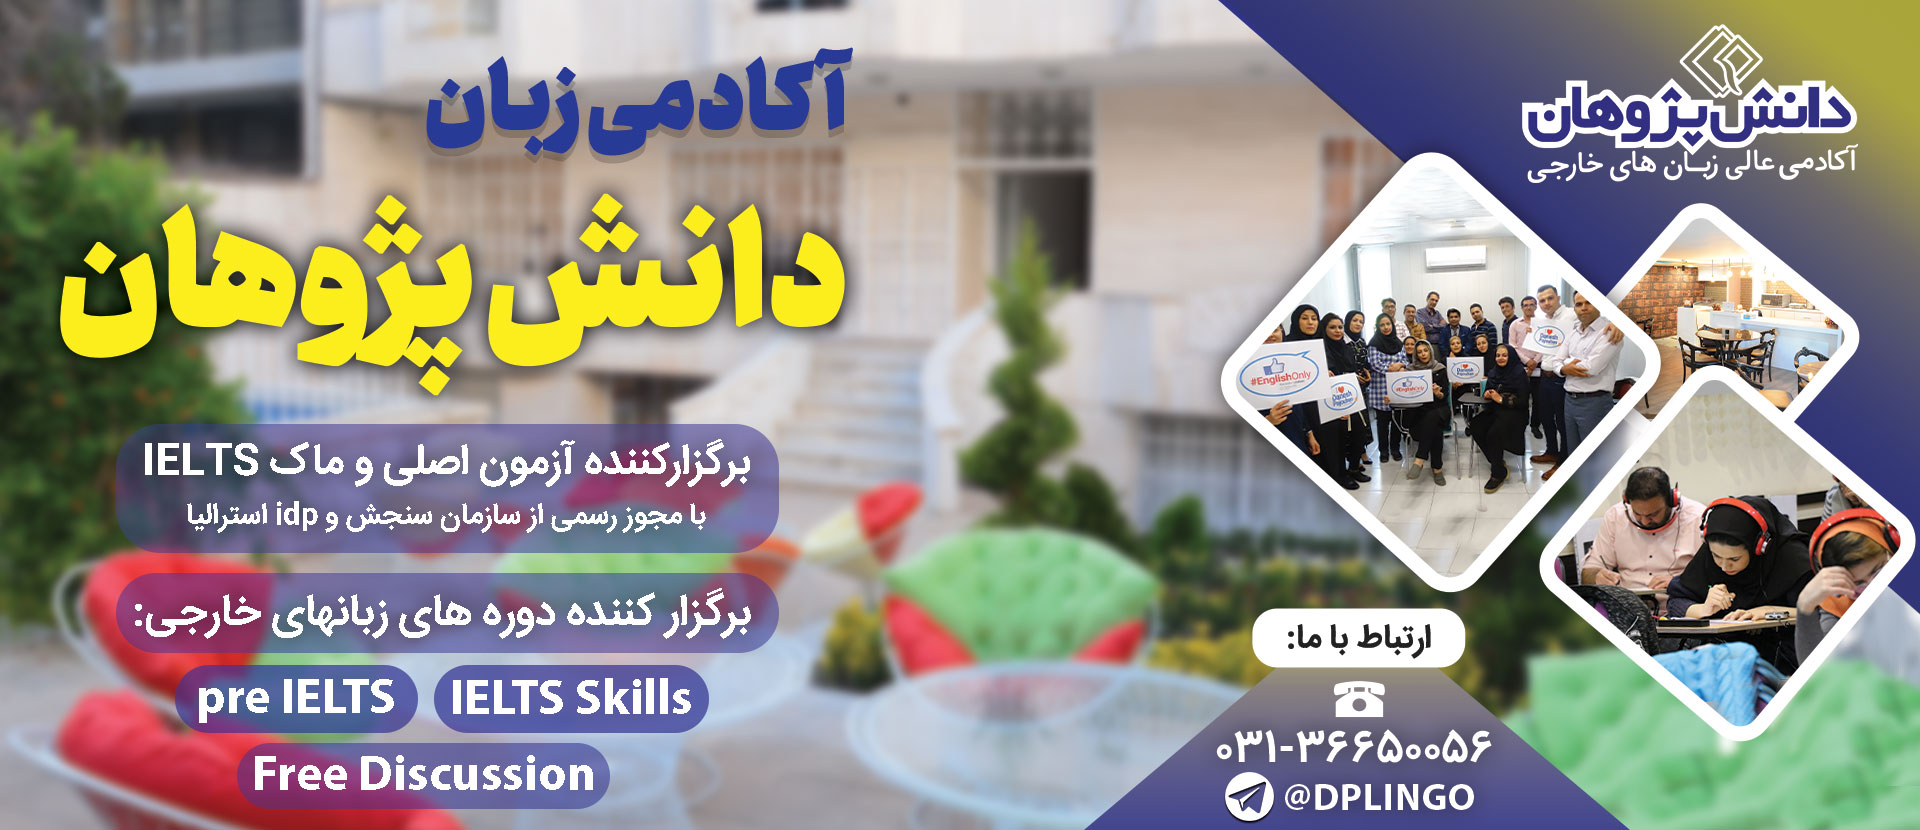 آموزشگاه زبان روسی اصفهان 